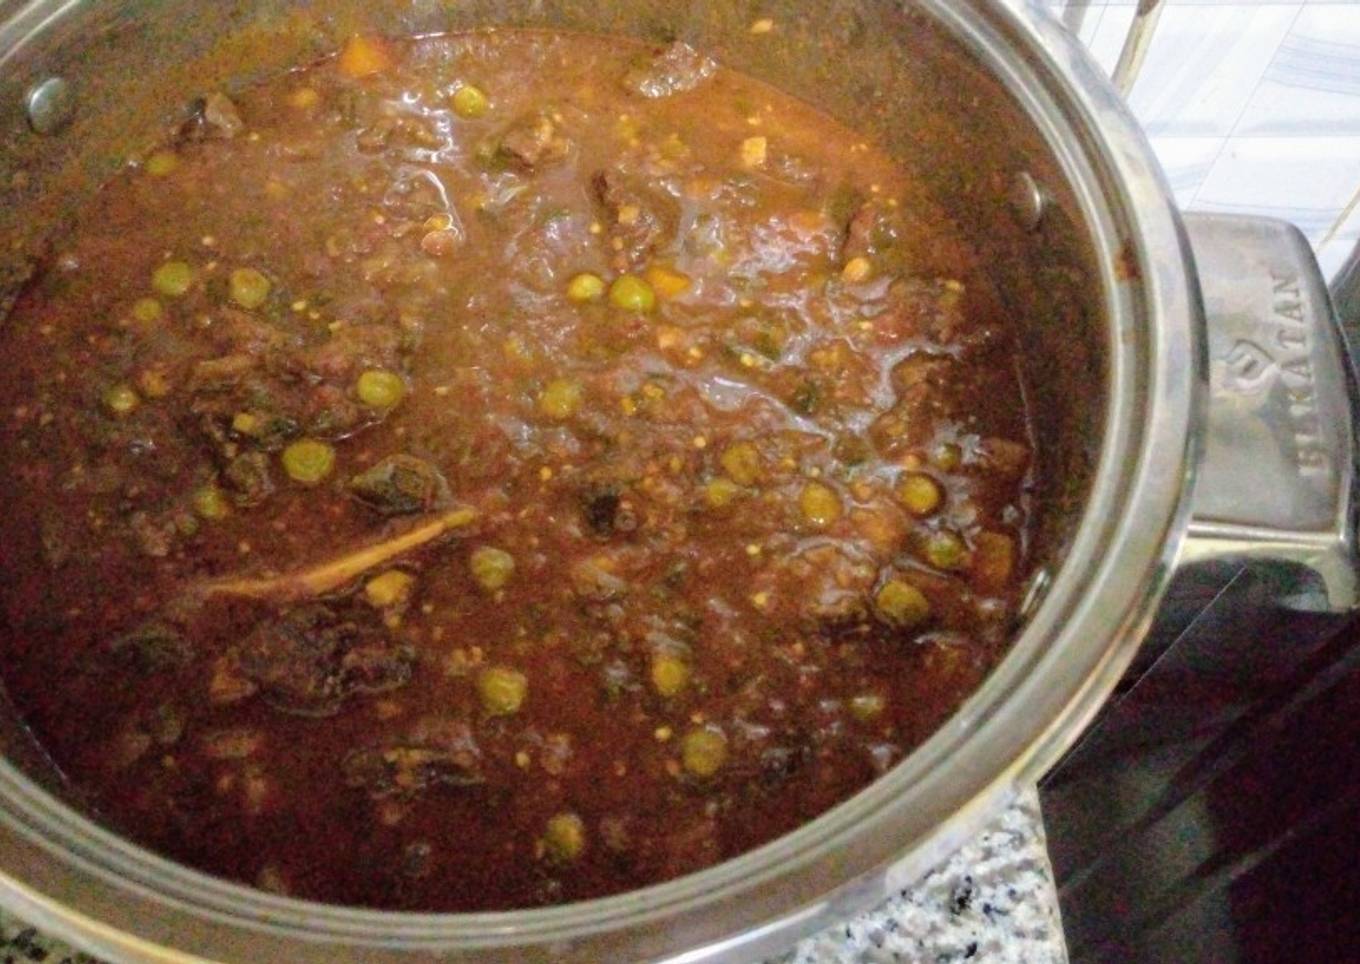 Beef stew with graden peas